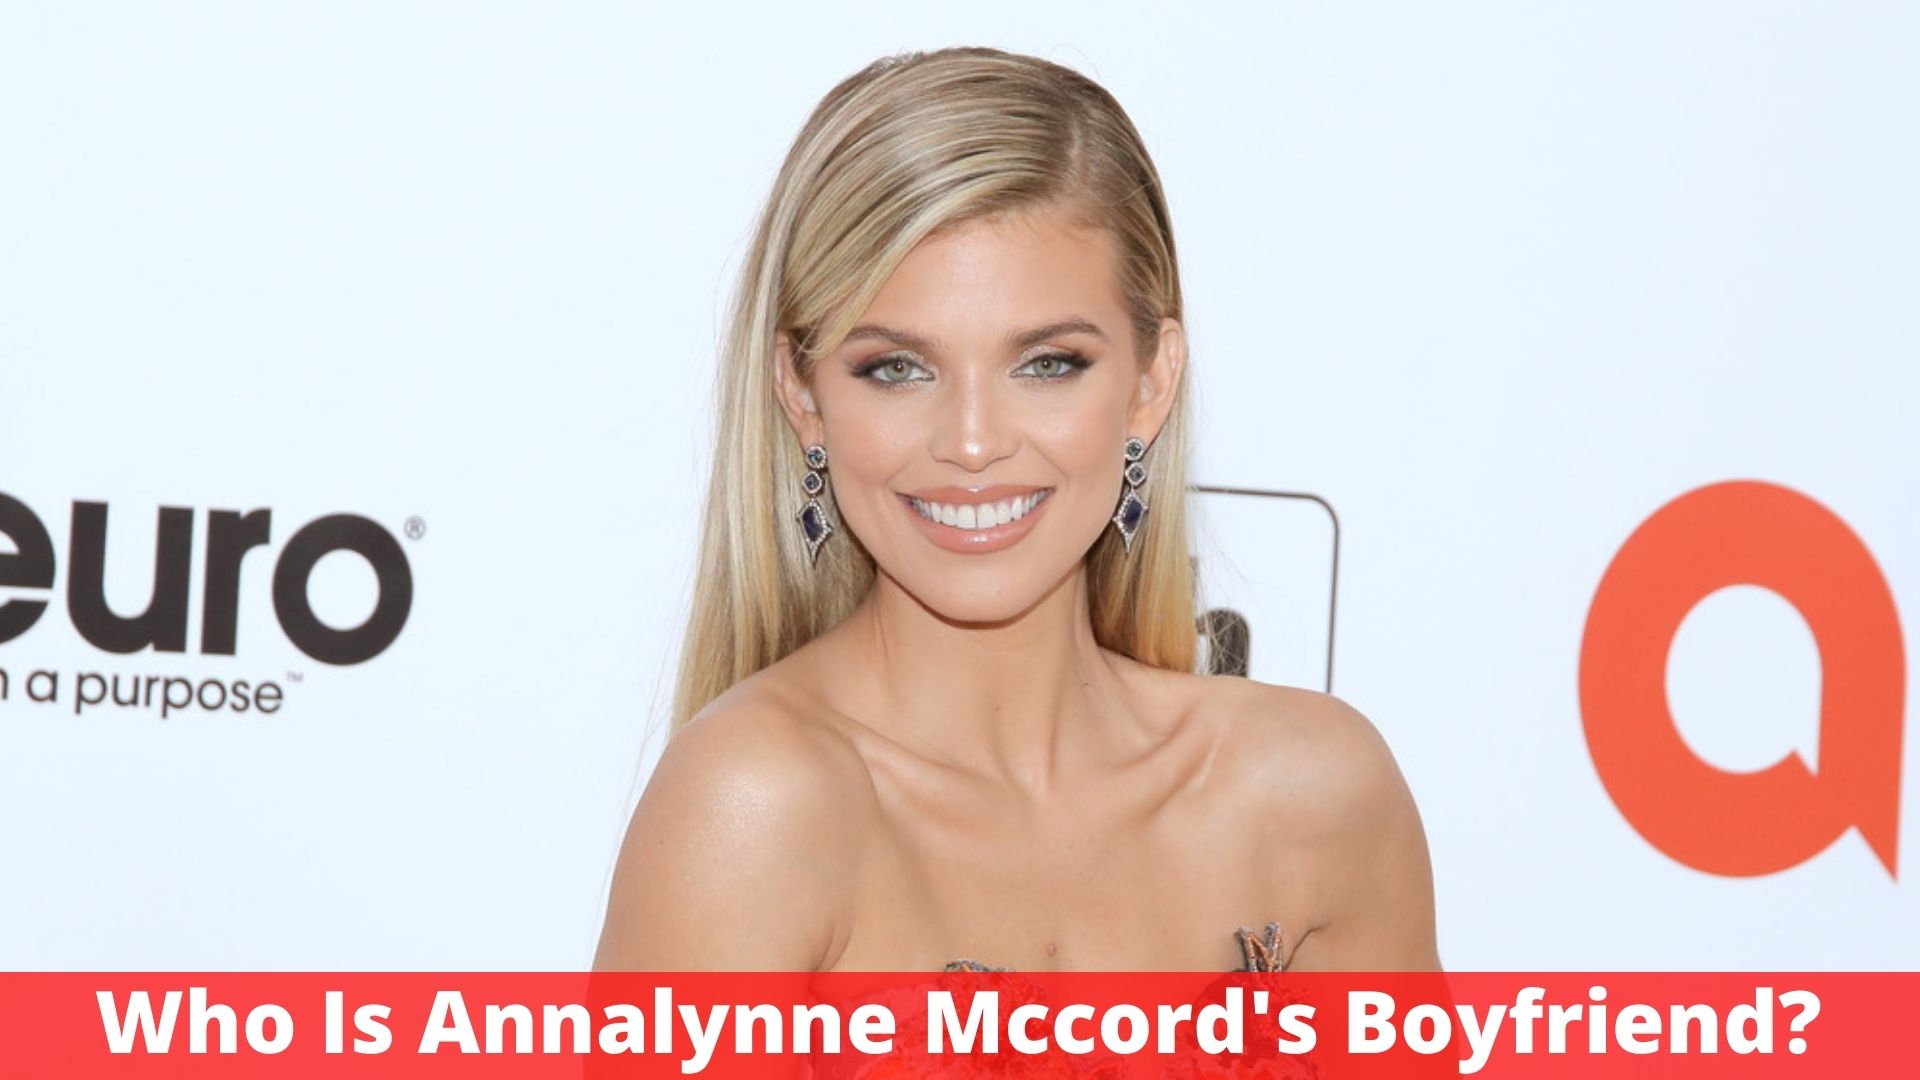 Who Is Annalynne Mccord's Boyfriend?